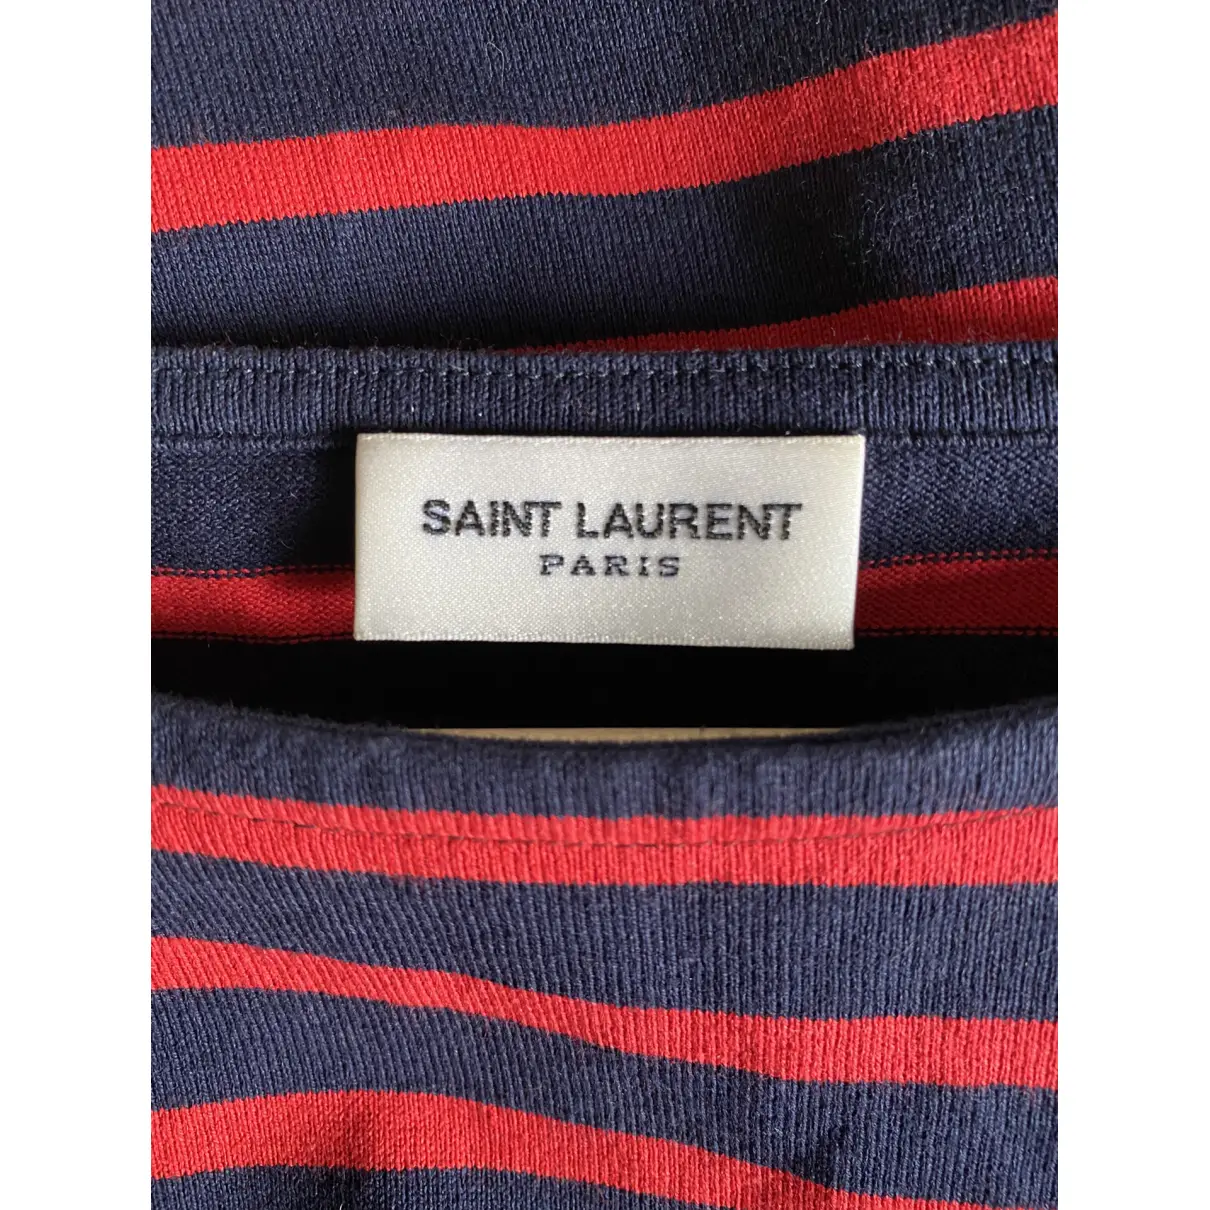 Buy Saint Laurent Top online